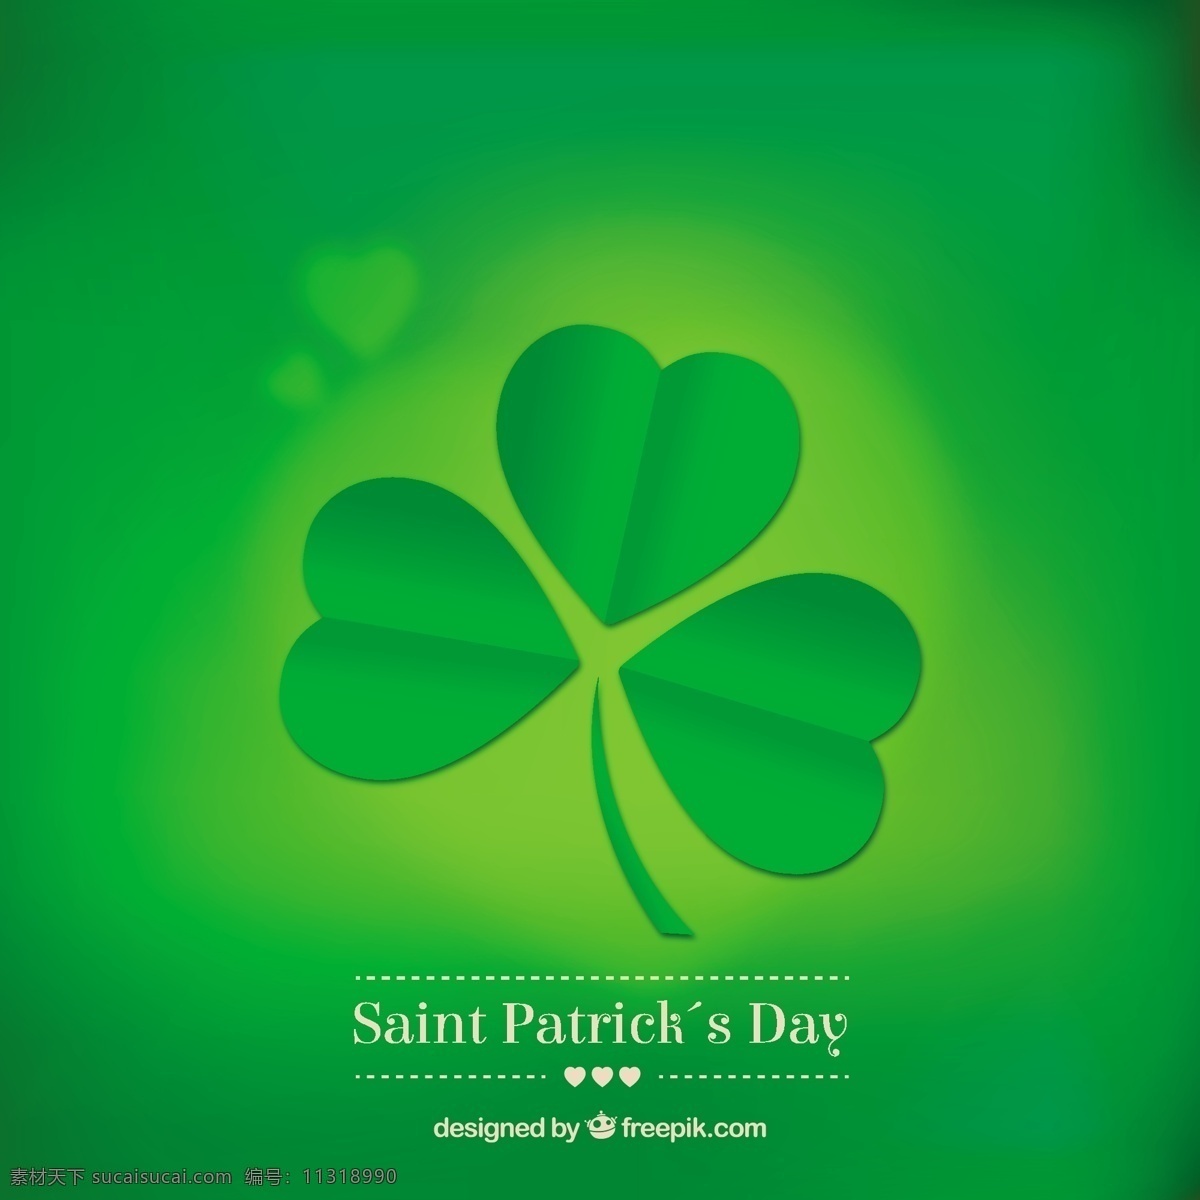 三叶草 图案 背景 绿色 假日 st 帕特里克 问候语 爱尔兰 问候 圣帕特里克 传统 三叶